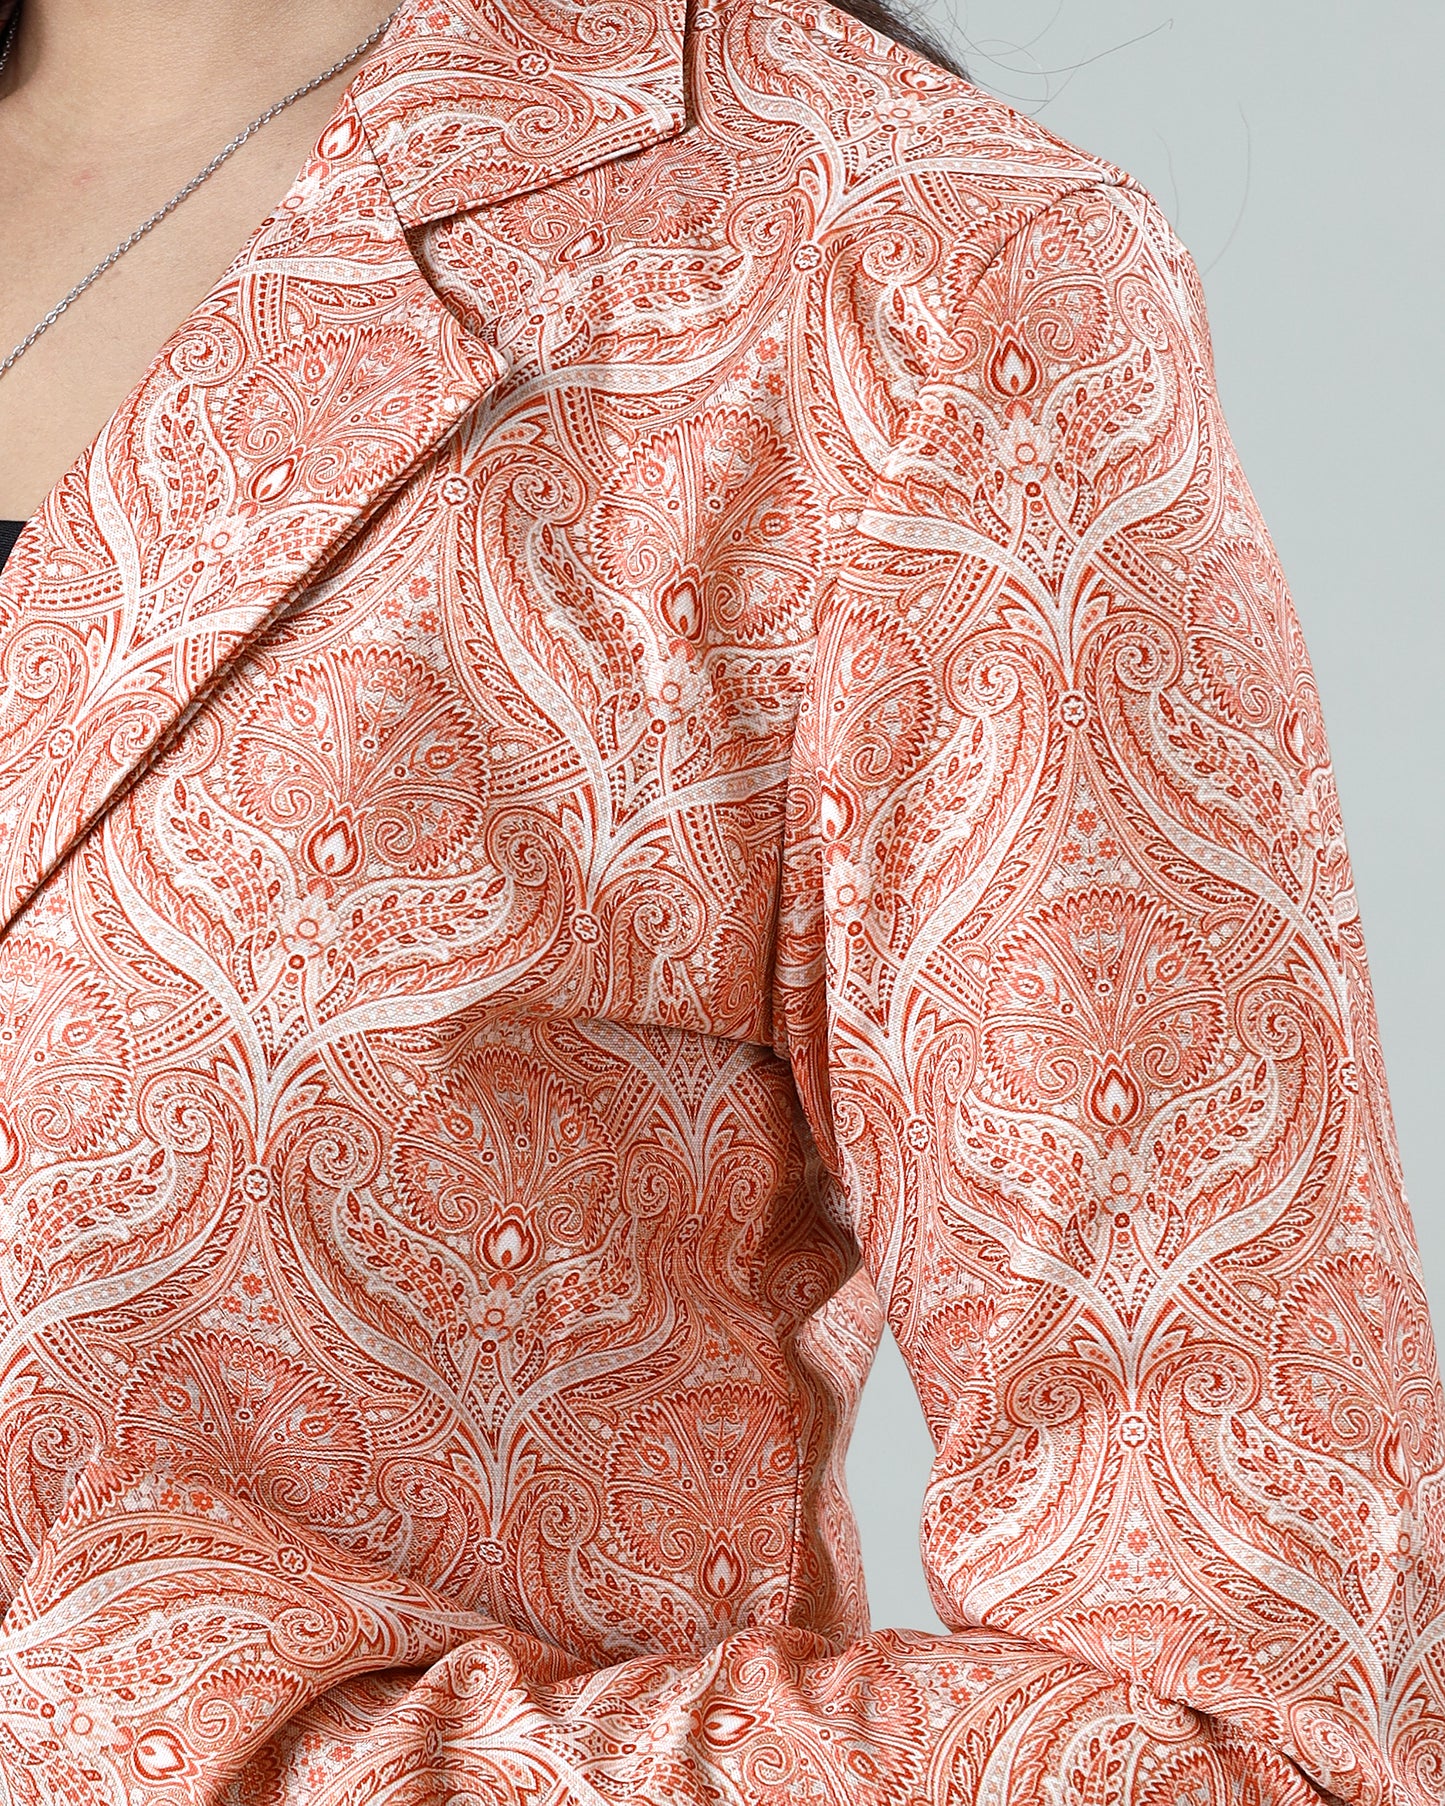 Designed to Impress: Women's Floral Jacket